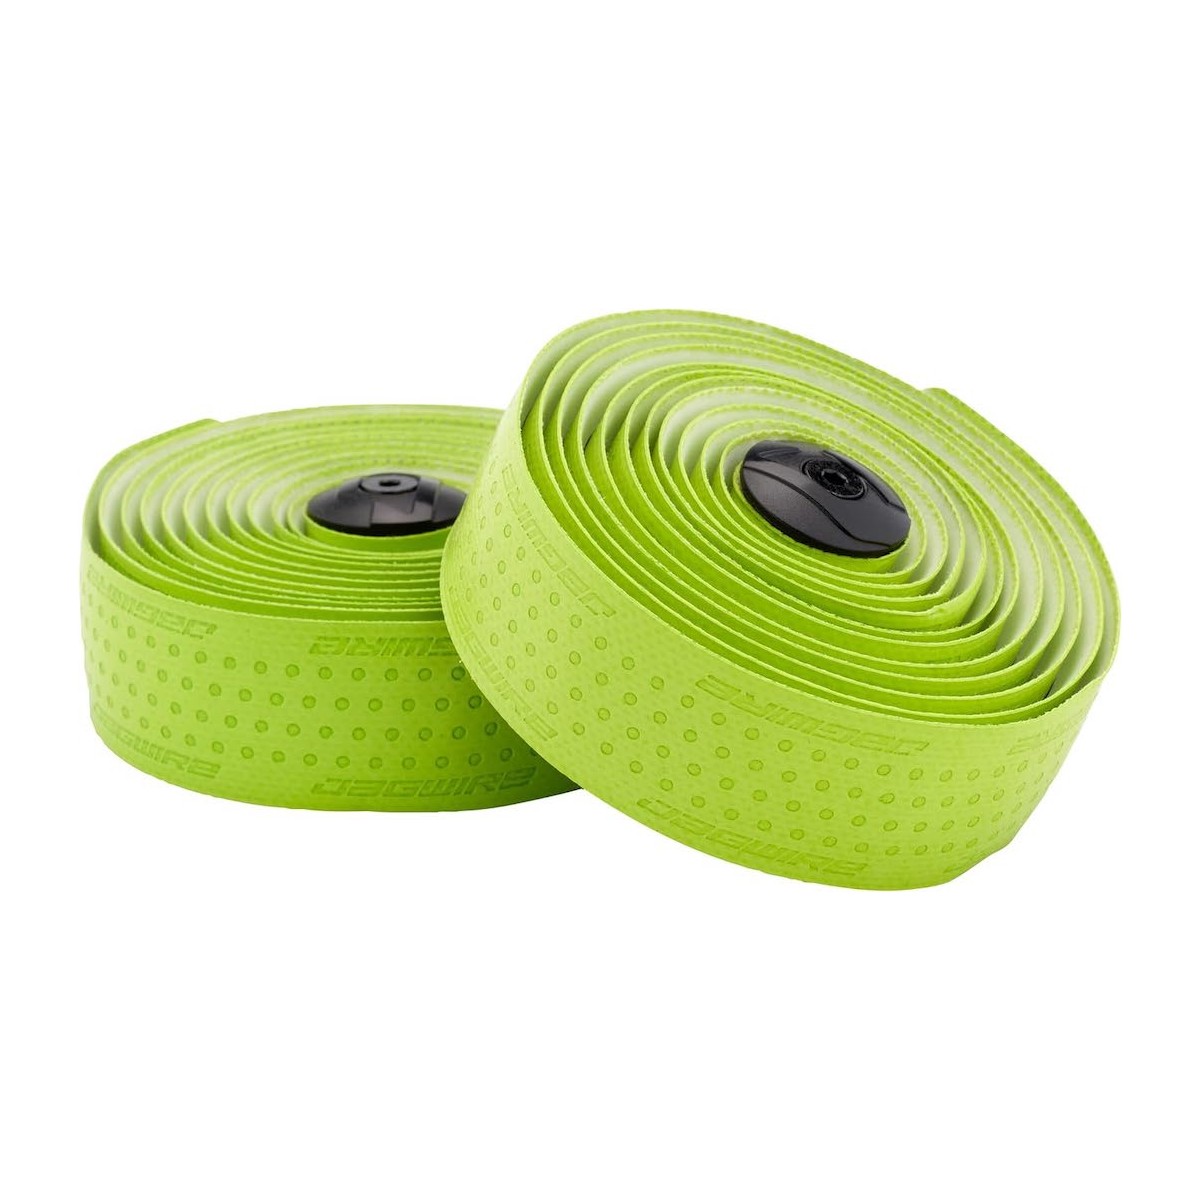 JAGWIRE PRO handlebar tape - green